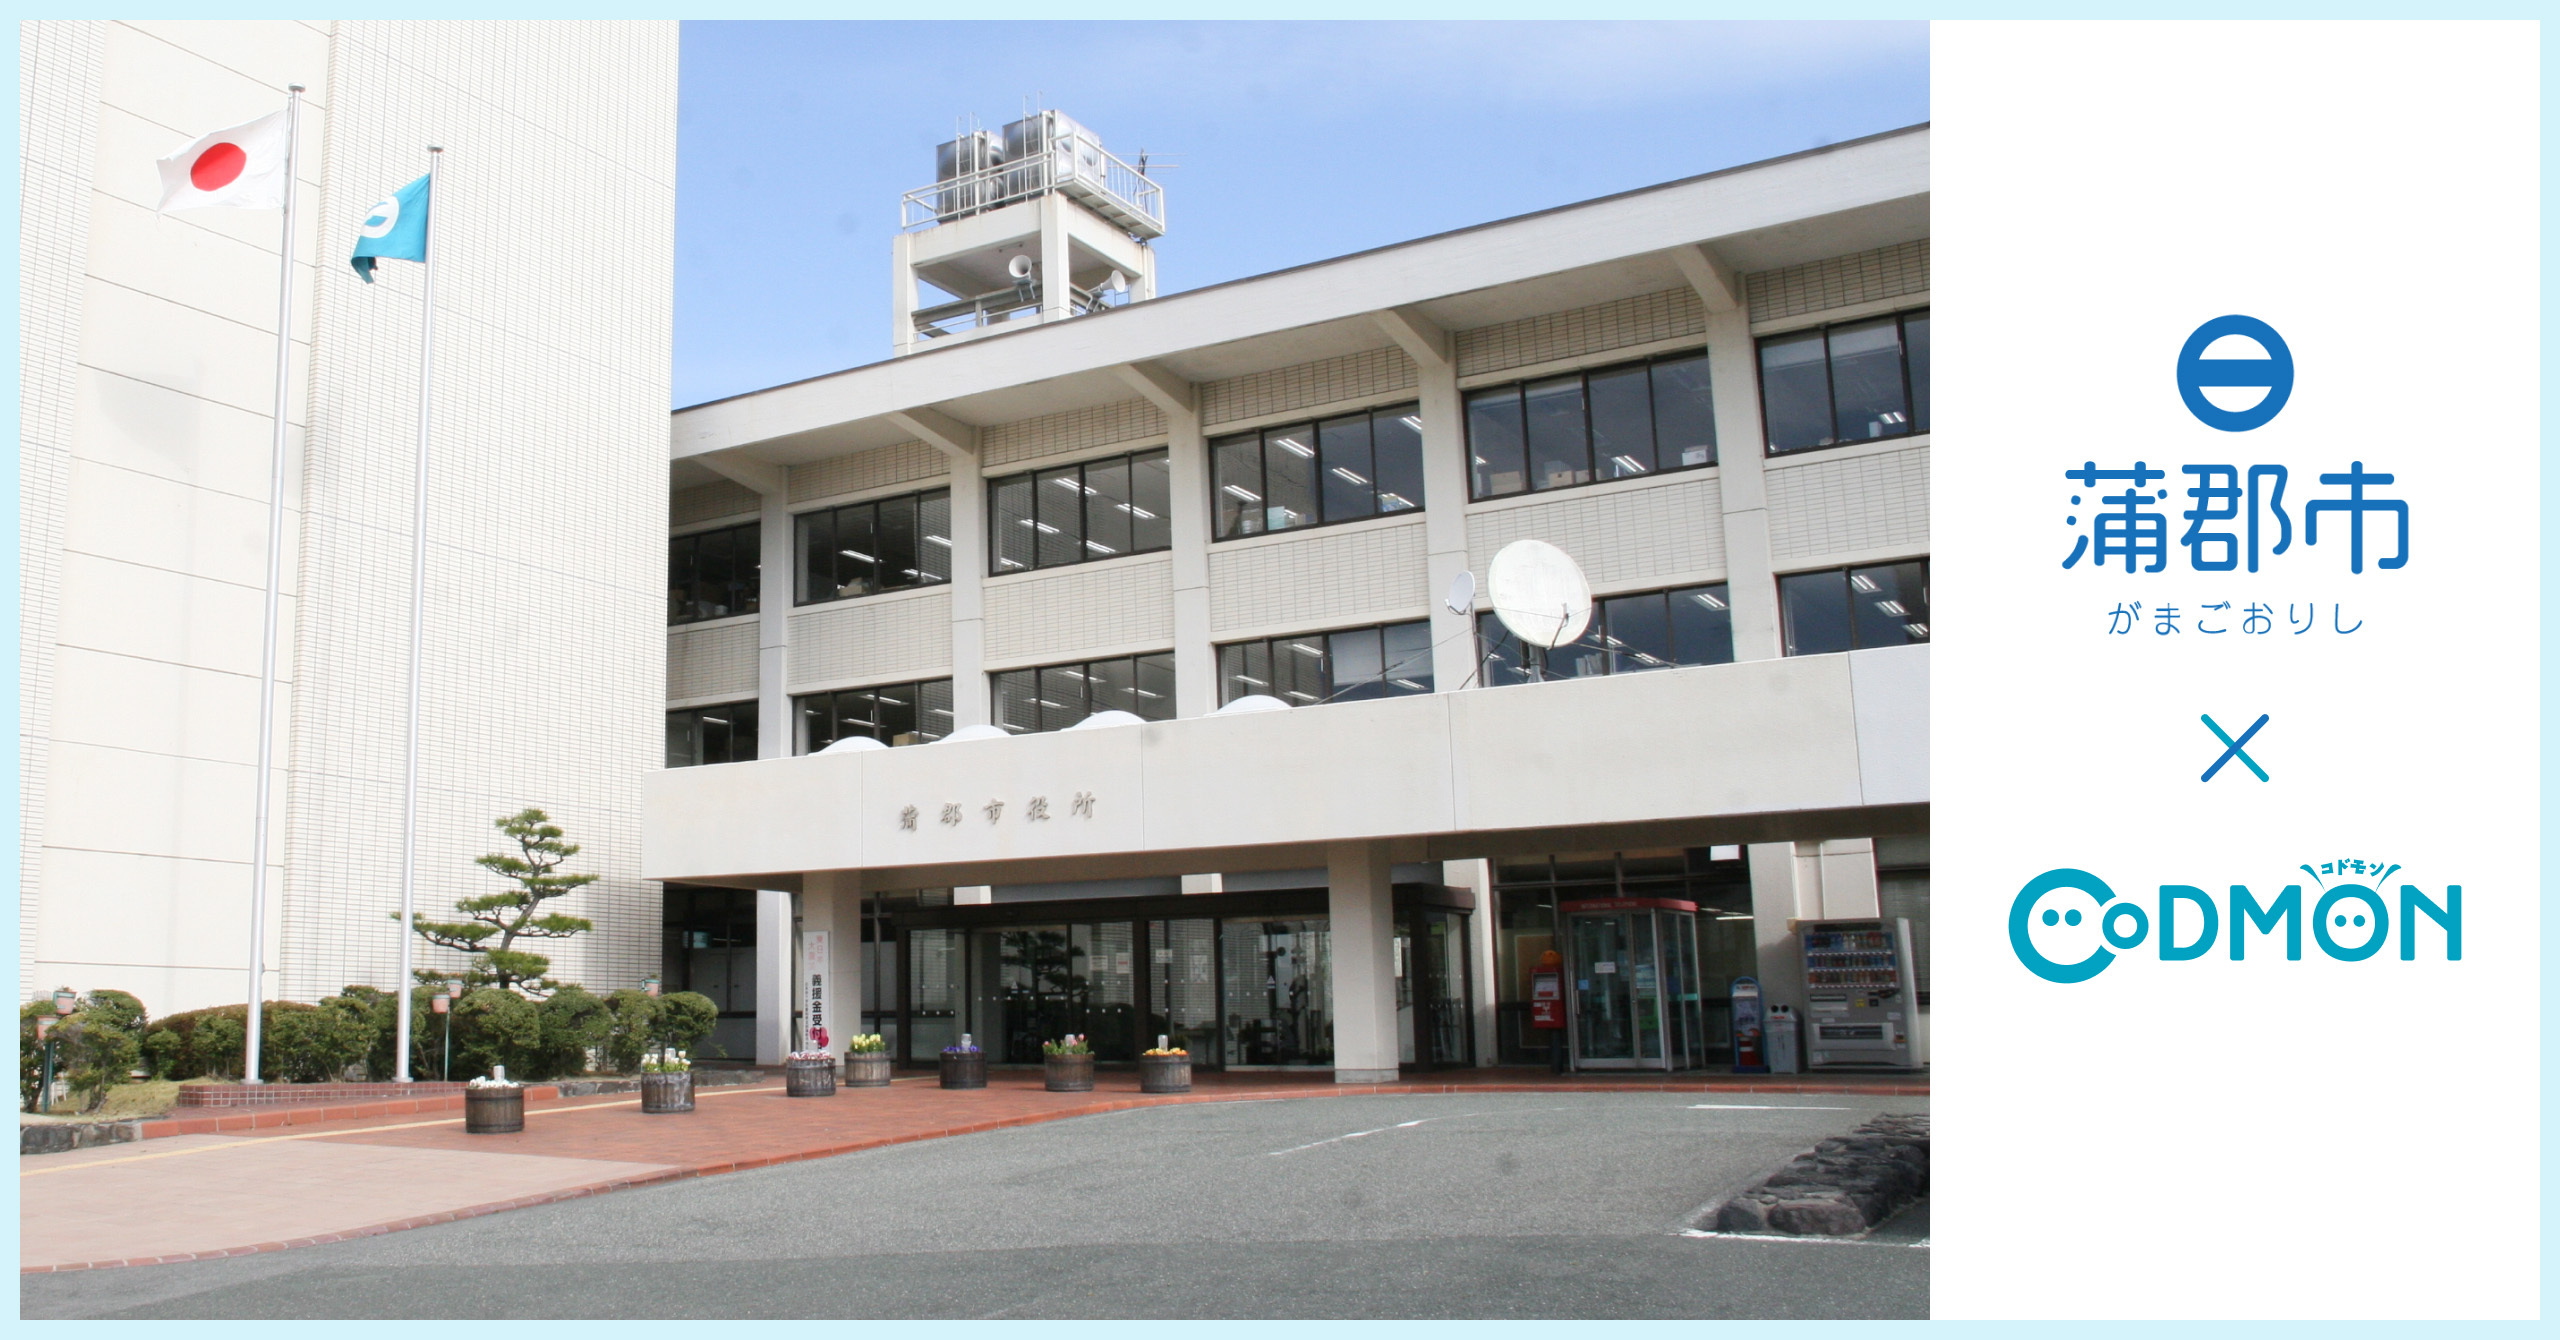 コドモン、愛知県蒲郡市の保育所15施設に保育・教育施設向けICTサービス「CoDMON」導入